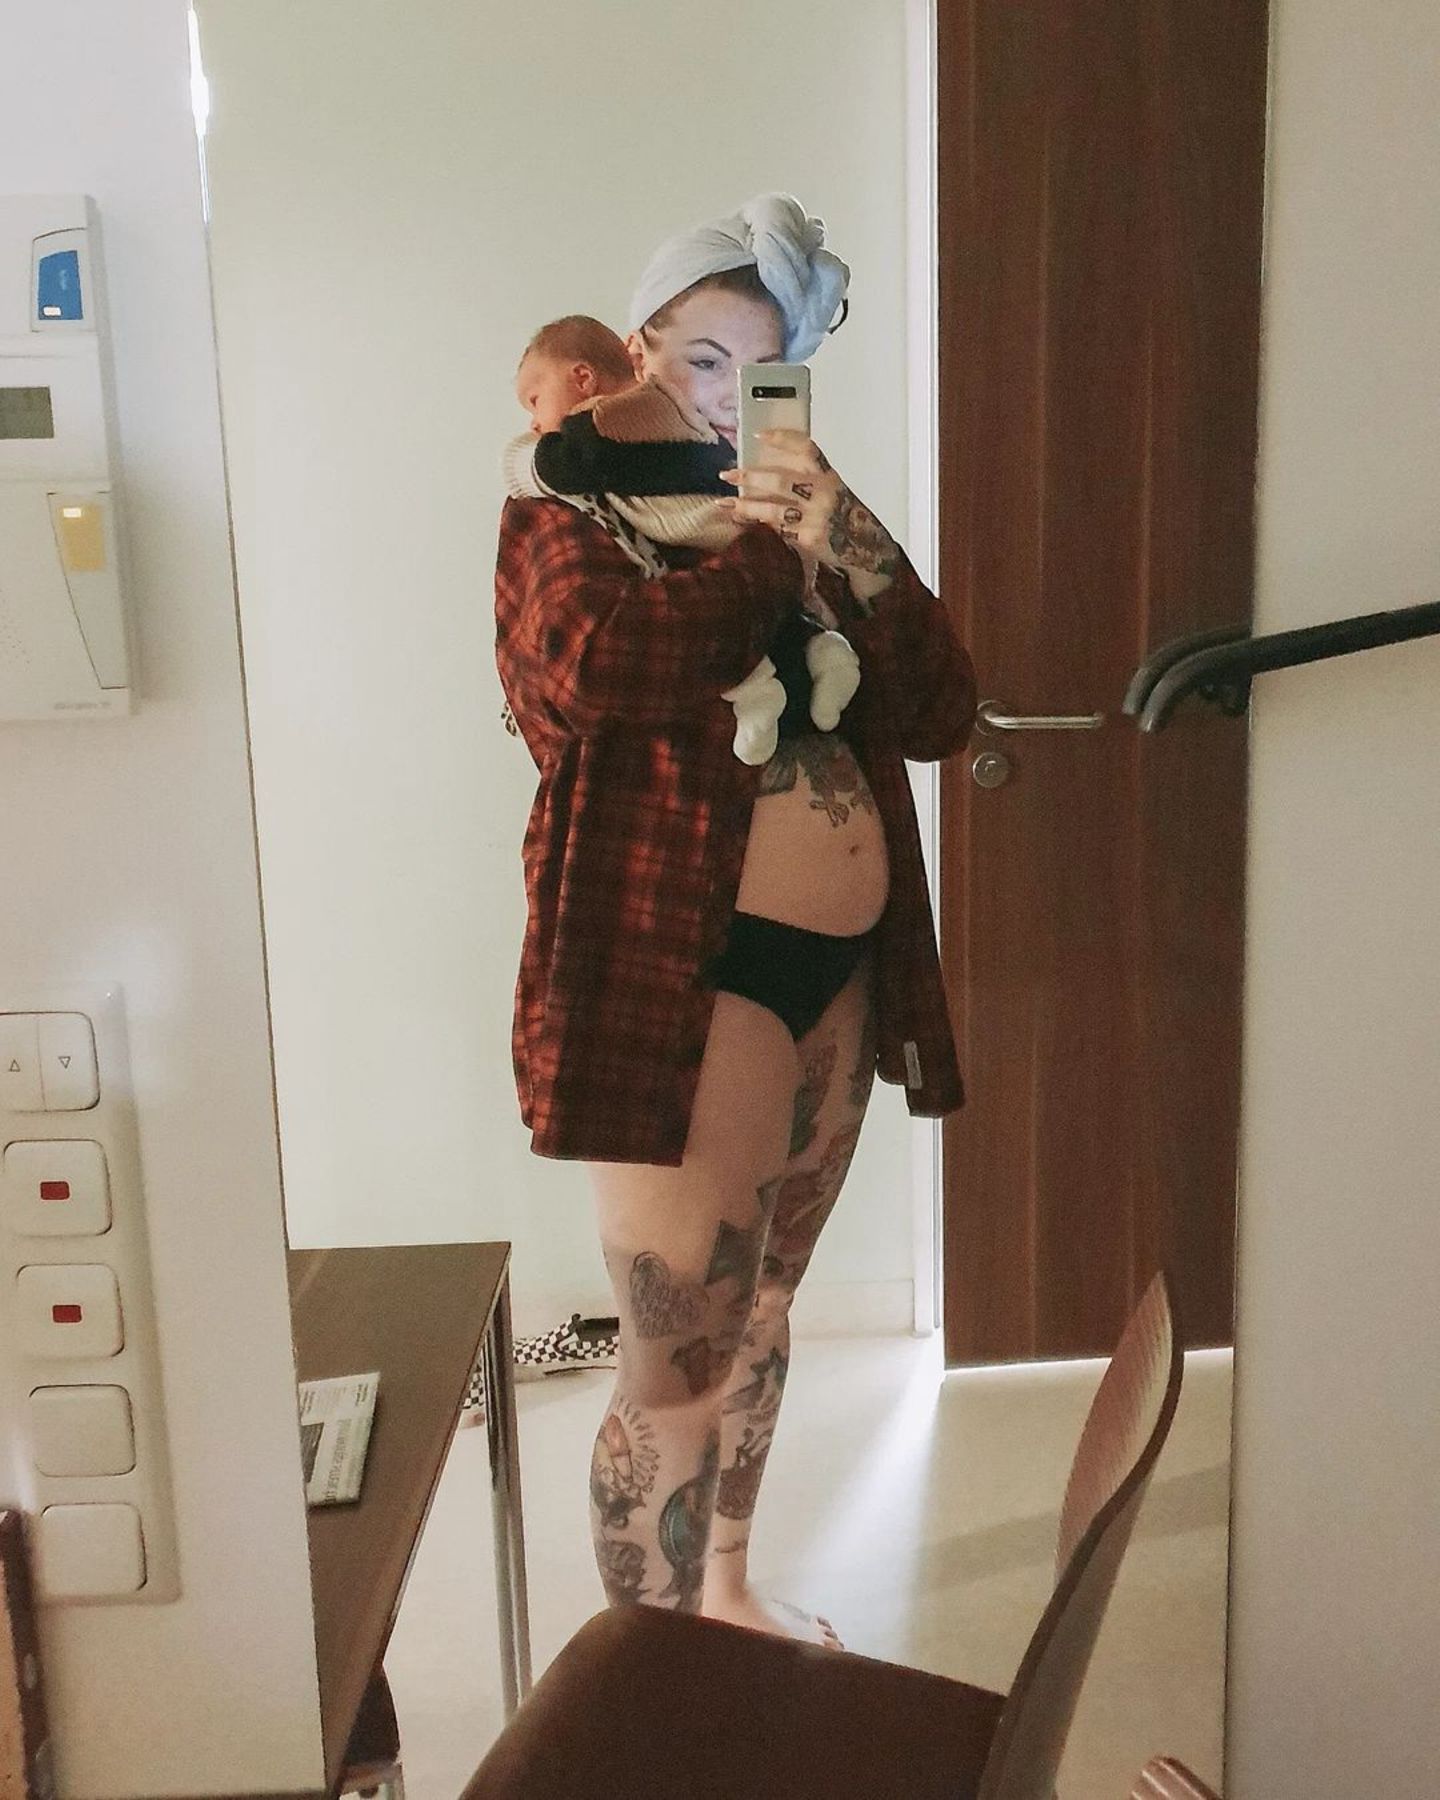 "Meine Traumgeburt? Ein Wunschkaiserschnitt!": Vanessa mit ihrem Baby vor dem Spiegel